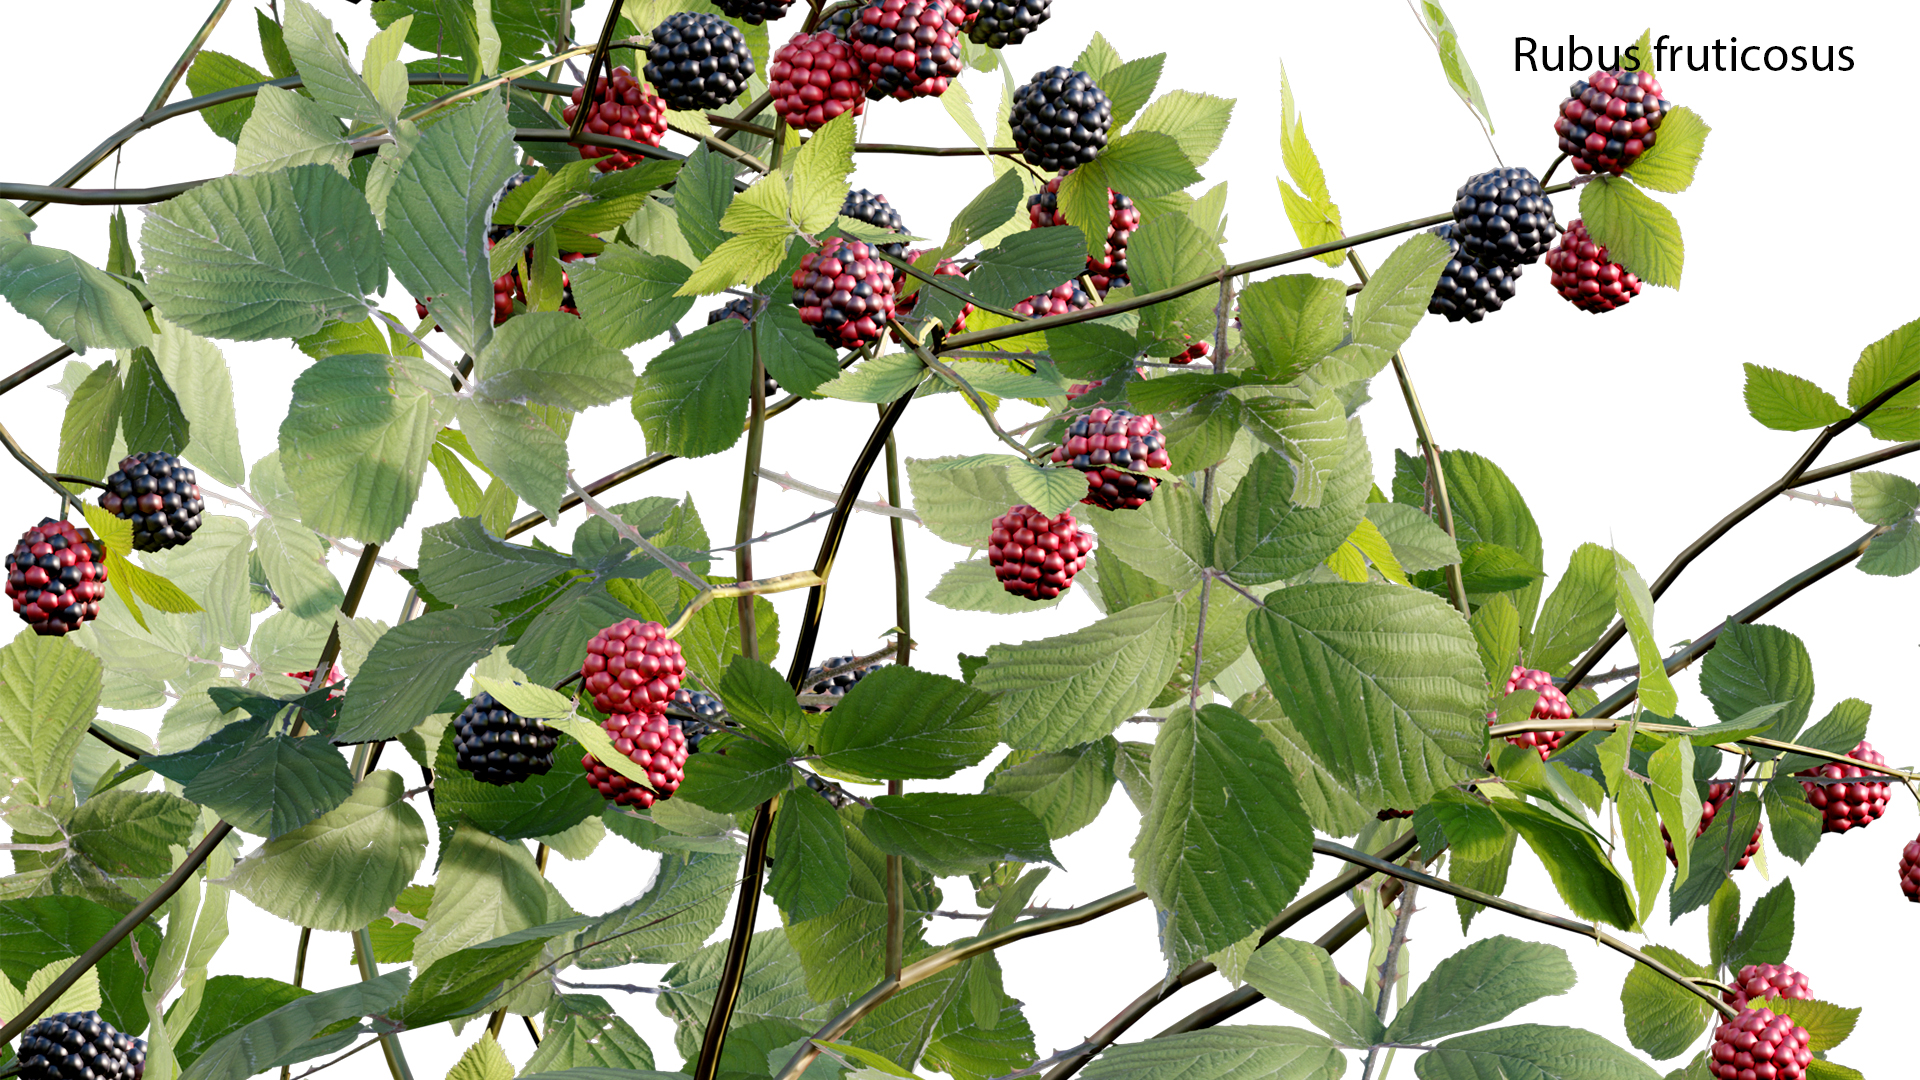 Rubus fruticosus - Blackberry